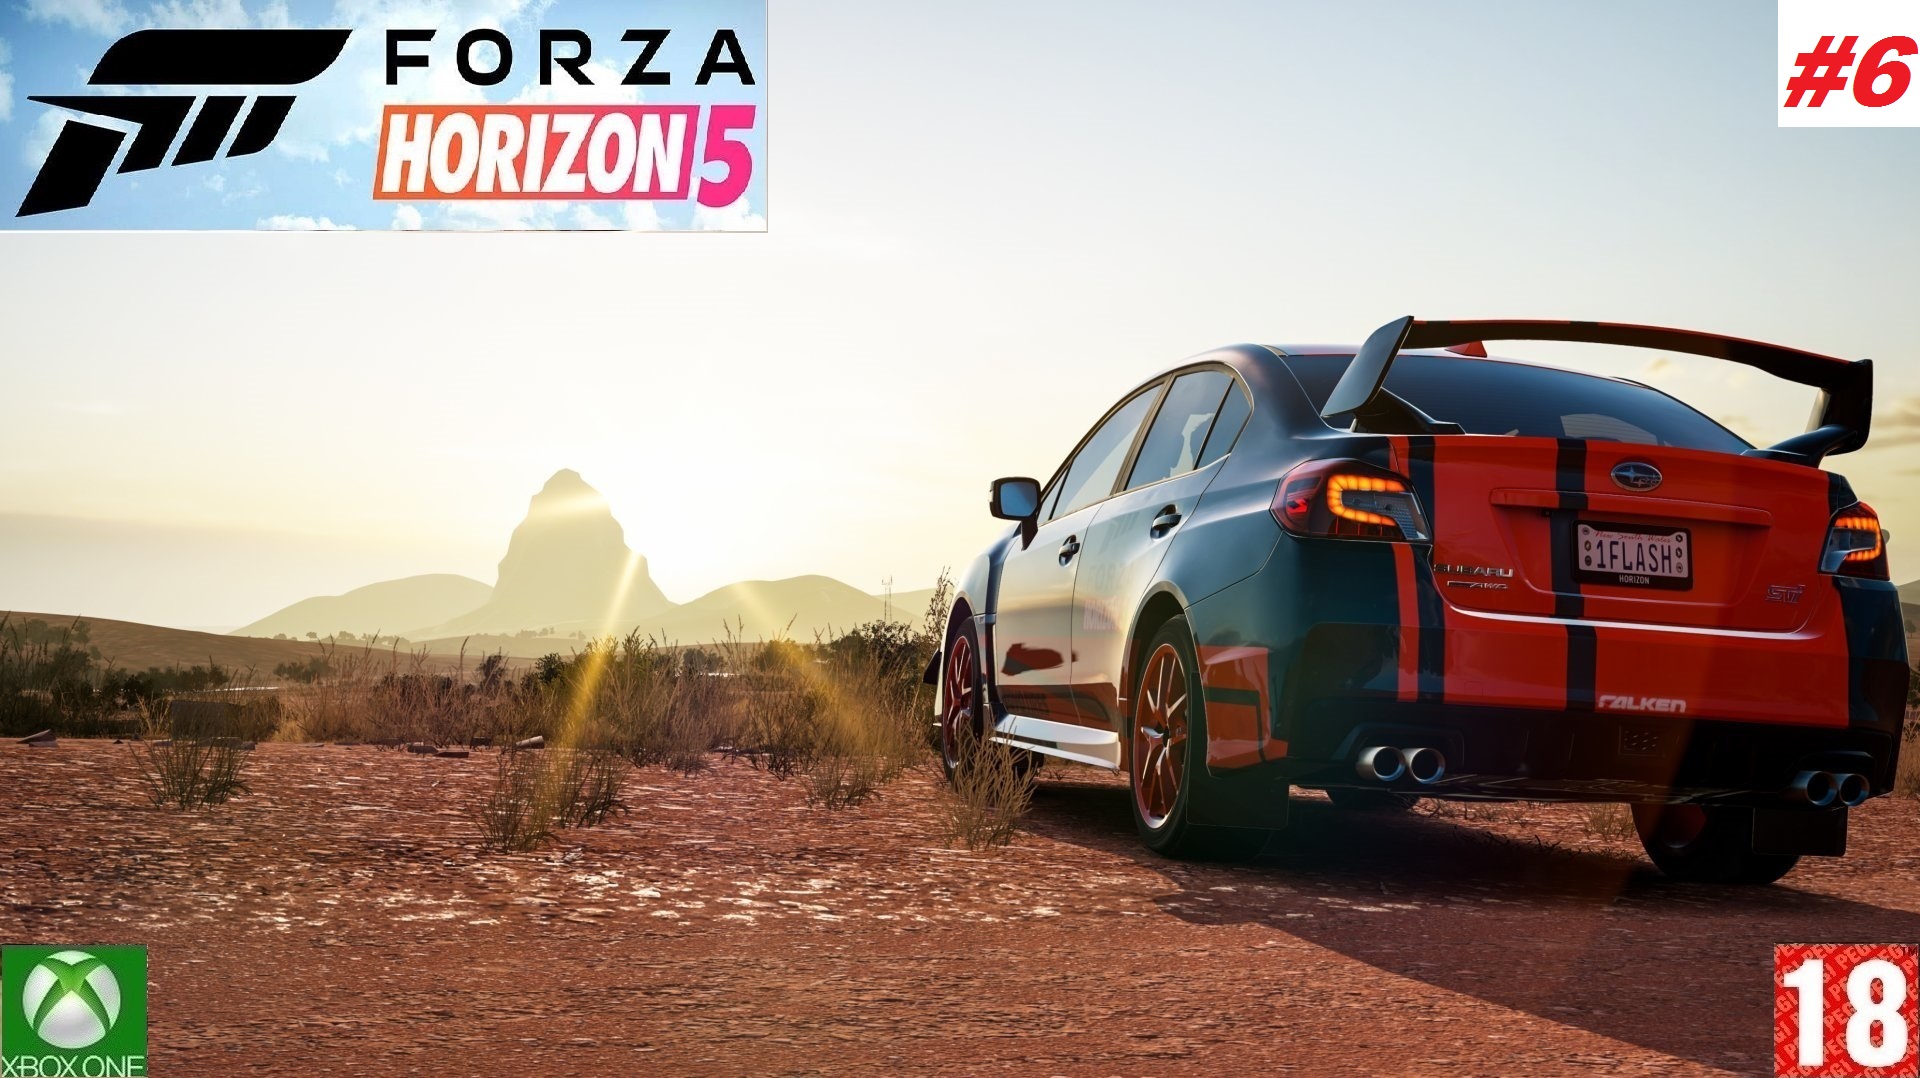 Forza Horizon 5 (Xbox One) - Прохождение - #6, Добро пожаловать в Мексику. (без комментариев)